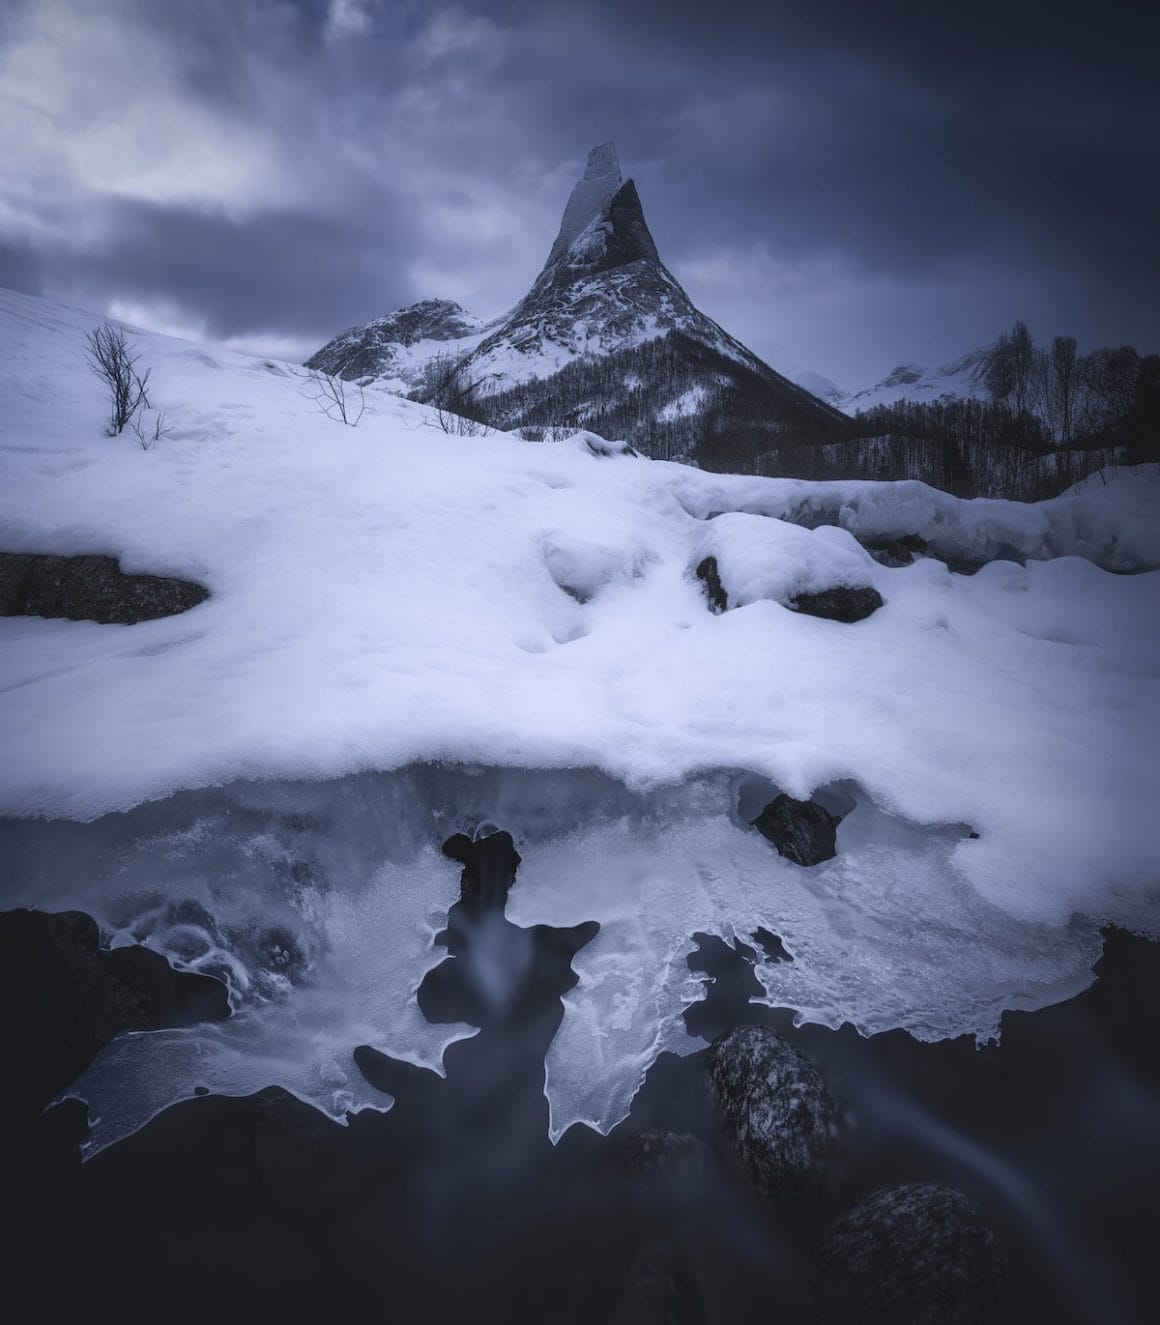 Les montagnes norvégiennes, capturées par le photographe Hong Jen Chiang pour le Concours international de la photographie de paysage